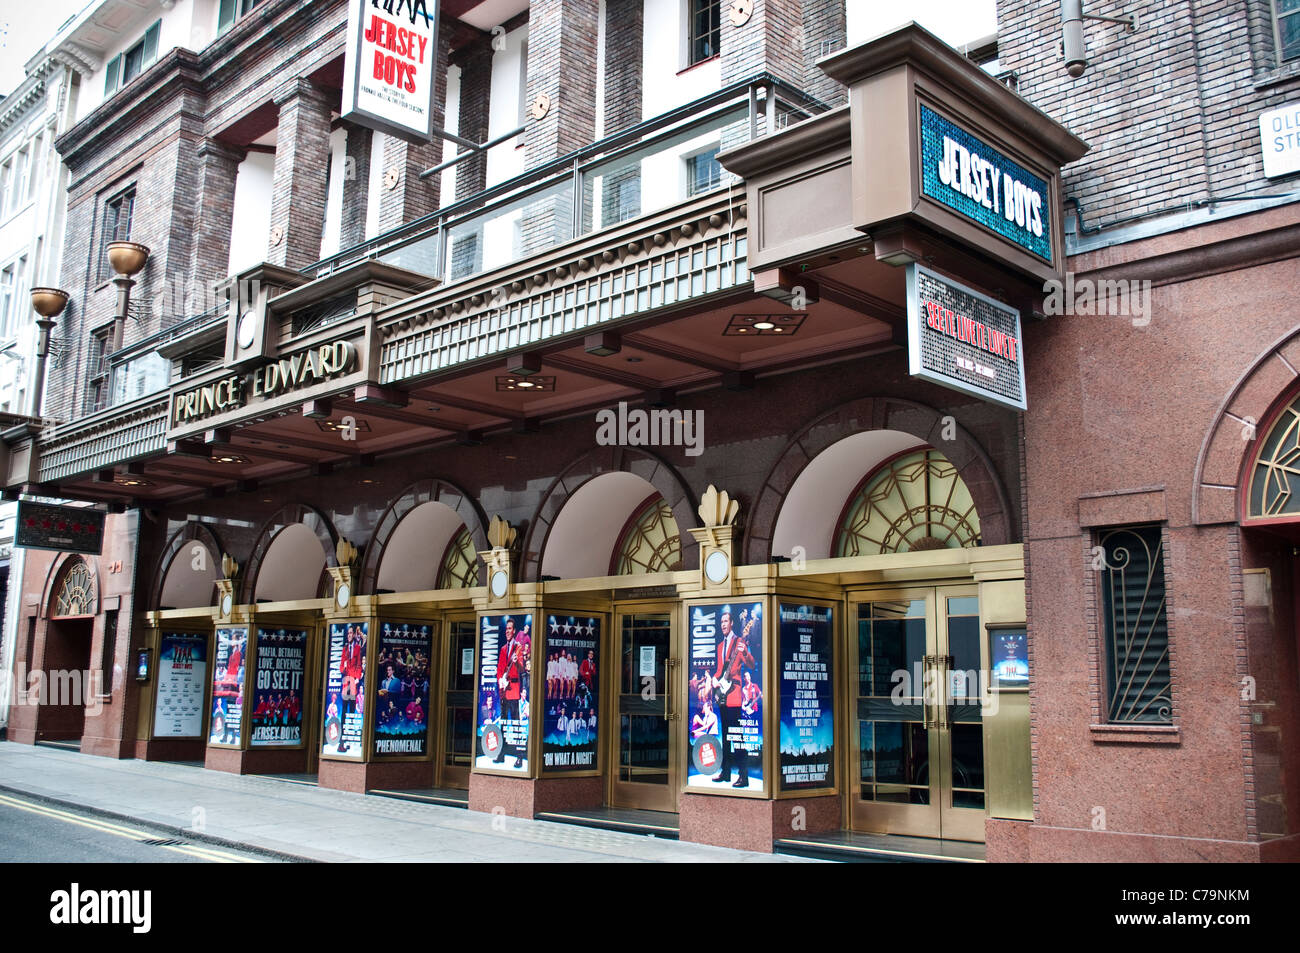 Prince Edward Theatre sulla vecchia strada Compton mostra Jersey Boys musical, London, Regno Unito Foto Stock